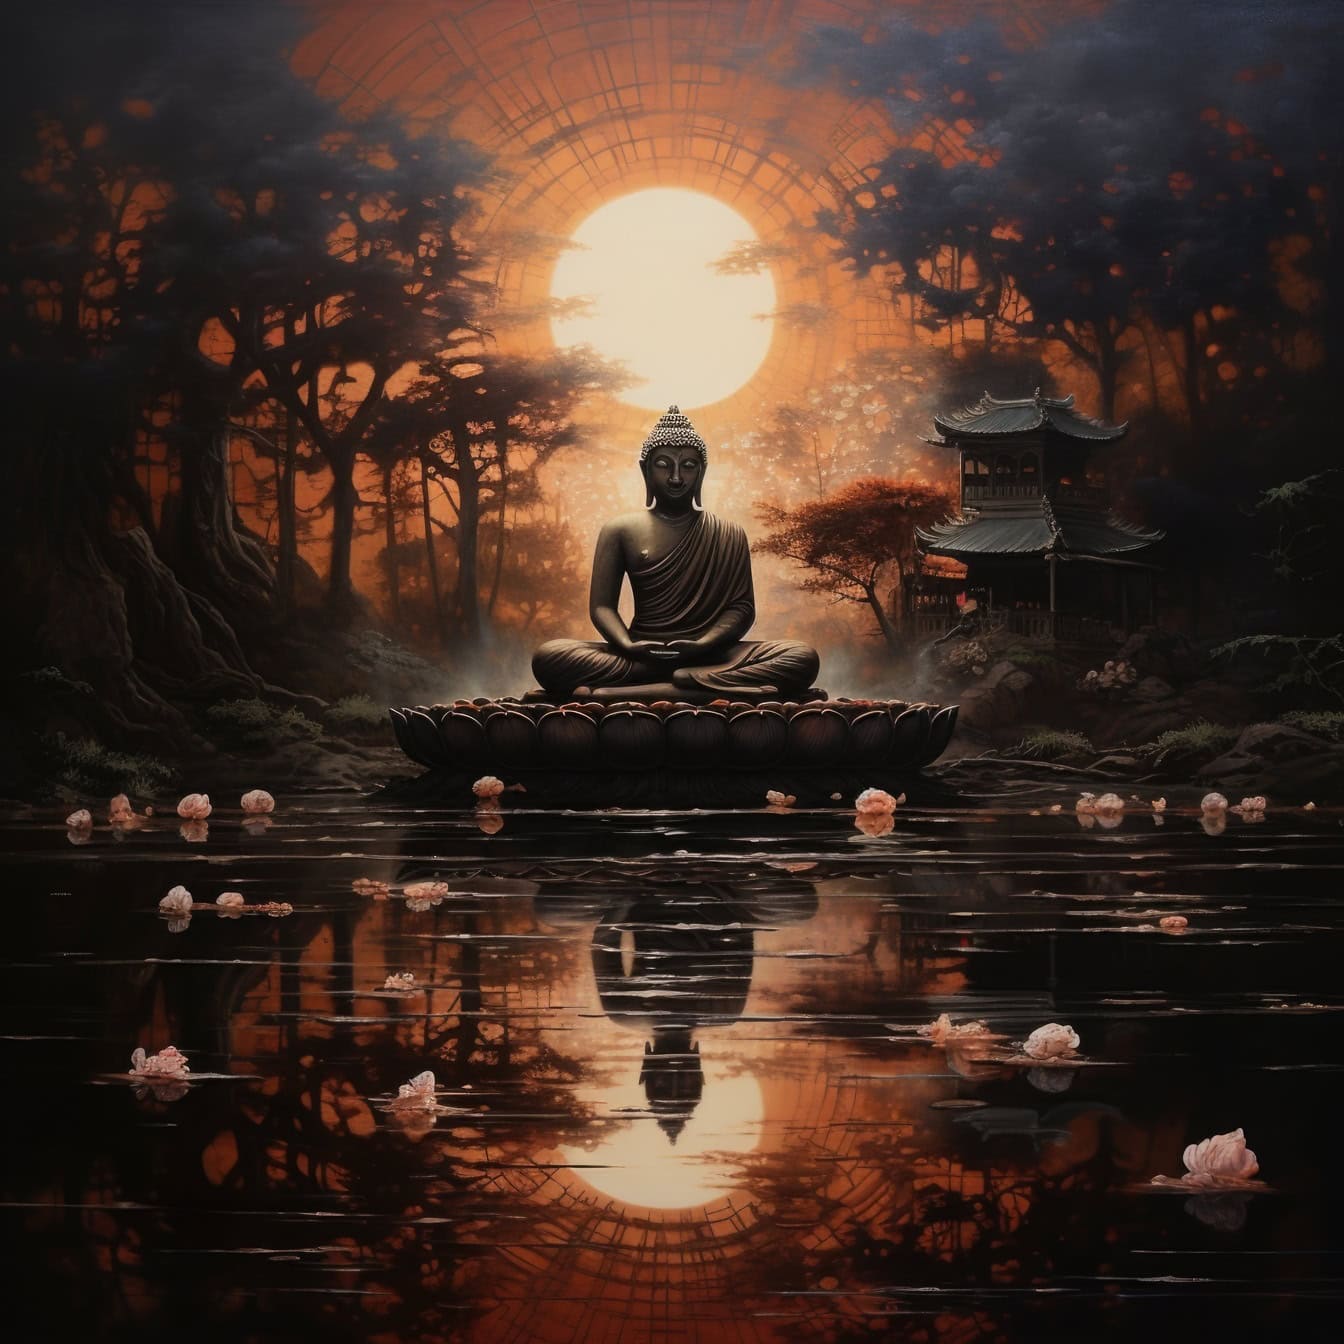 Gün batımının önünde bir nilüfer çiçeği üzerinde oturan ve meditasyon yapan bir Buda heykelinin grafik çizimi